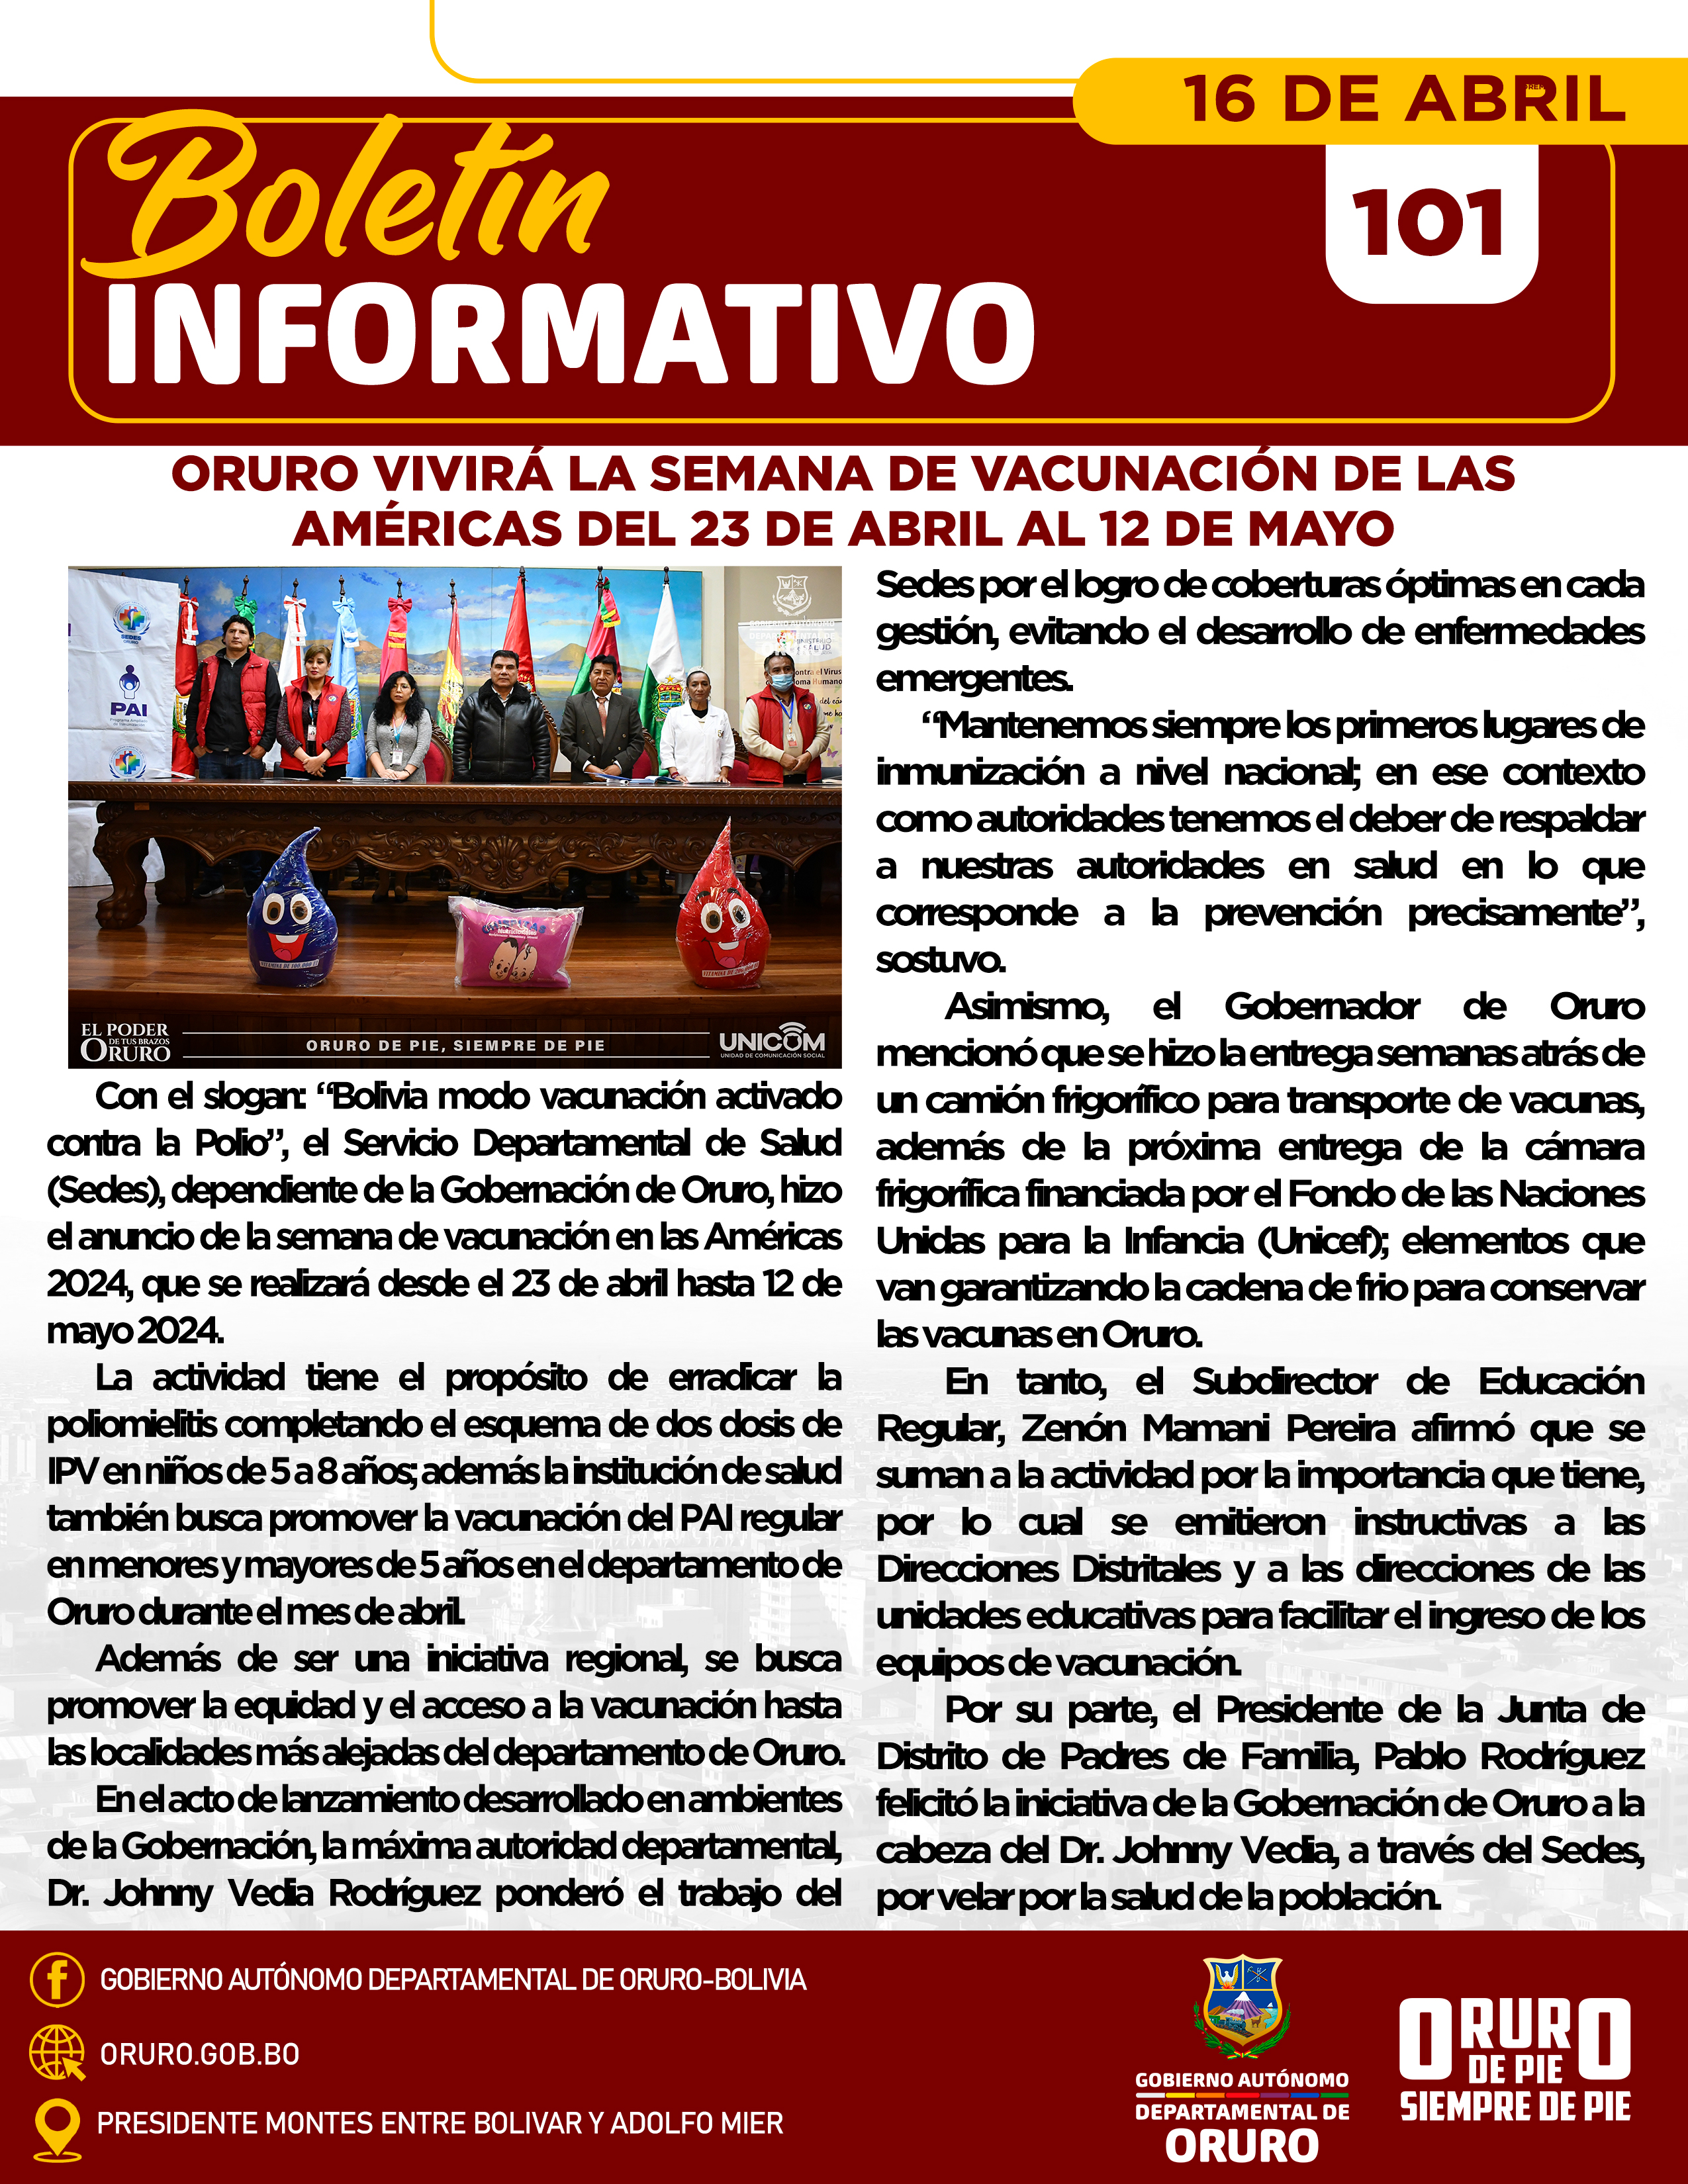 Oruro vivirá la Semana de Vacunación de las Américas del 23 de abril al 12 de mayo